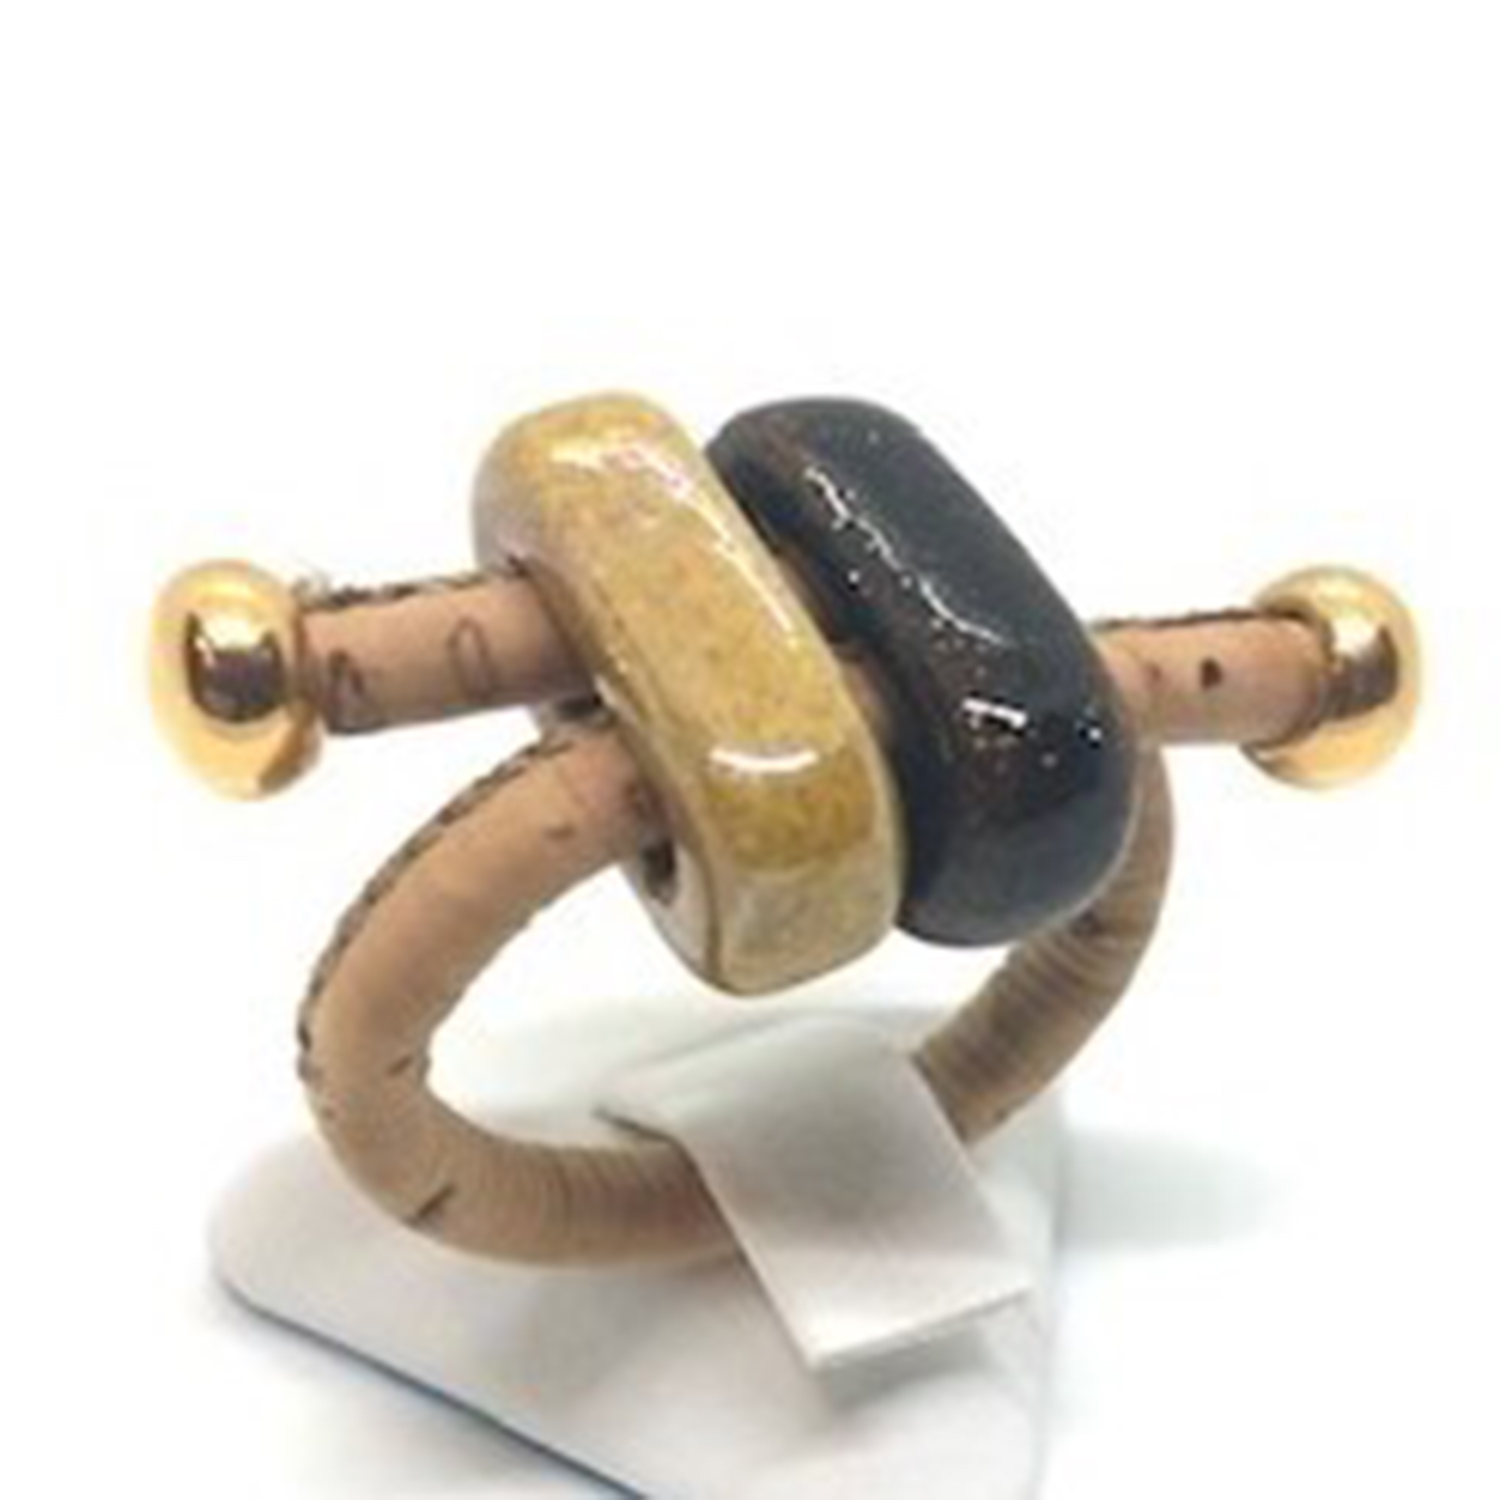 Γυναικεία/Αξεσουάρ/Κοσμήματα/Δαχτυλίδια APOXYLO - Γυναικείο δαχτυλίδι APOXYLO 988 DOUBLE HONEY BROWN καφέ κίτρινο